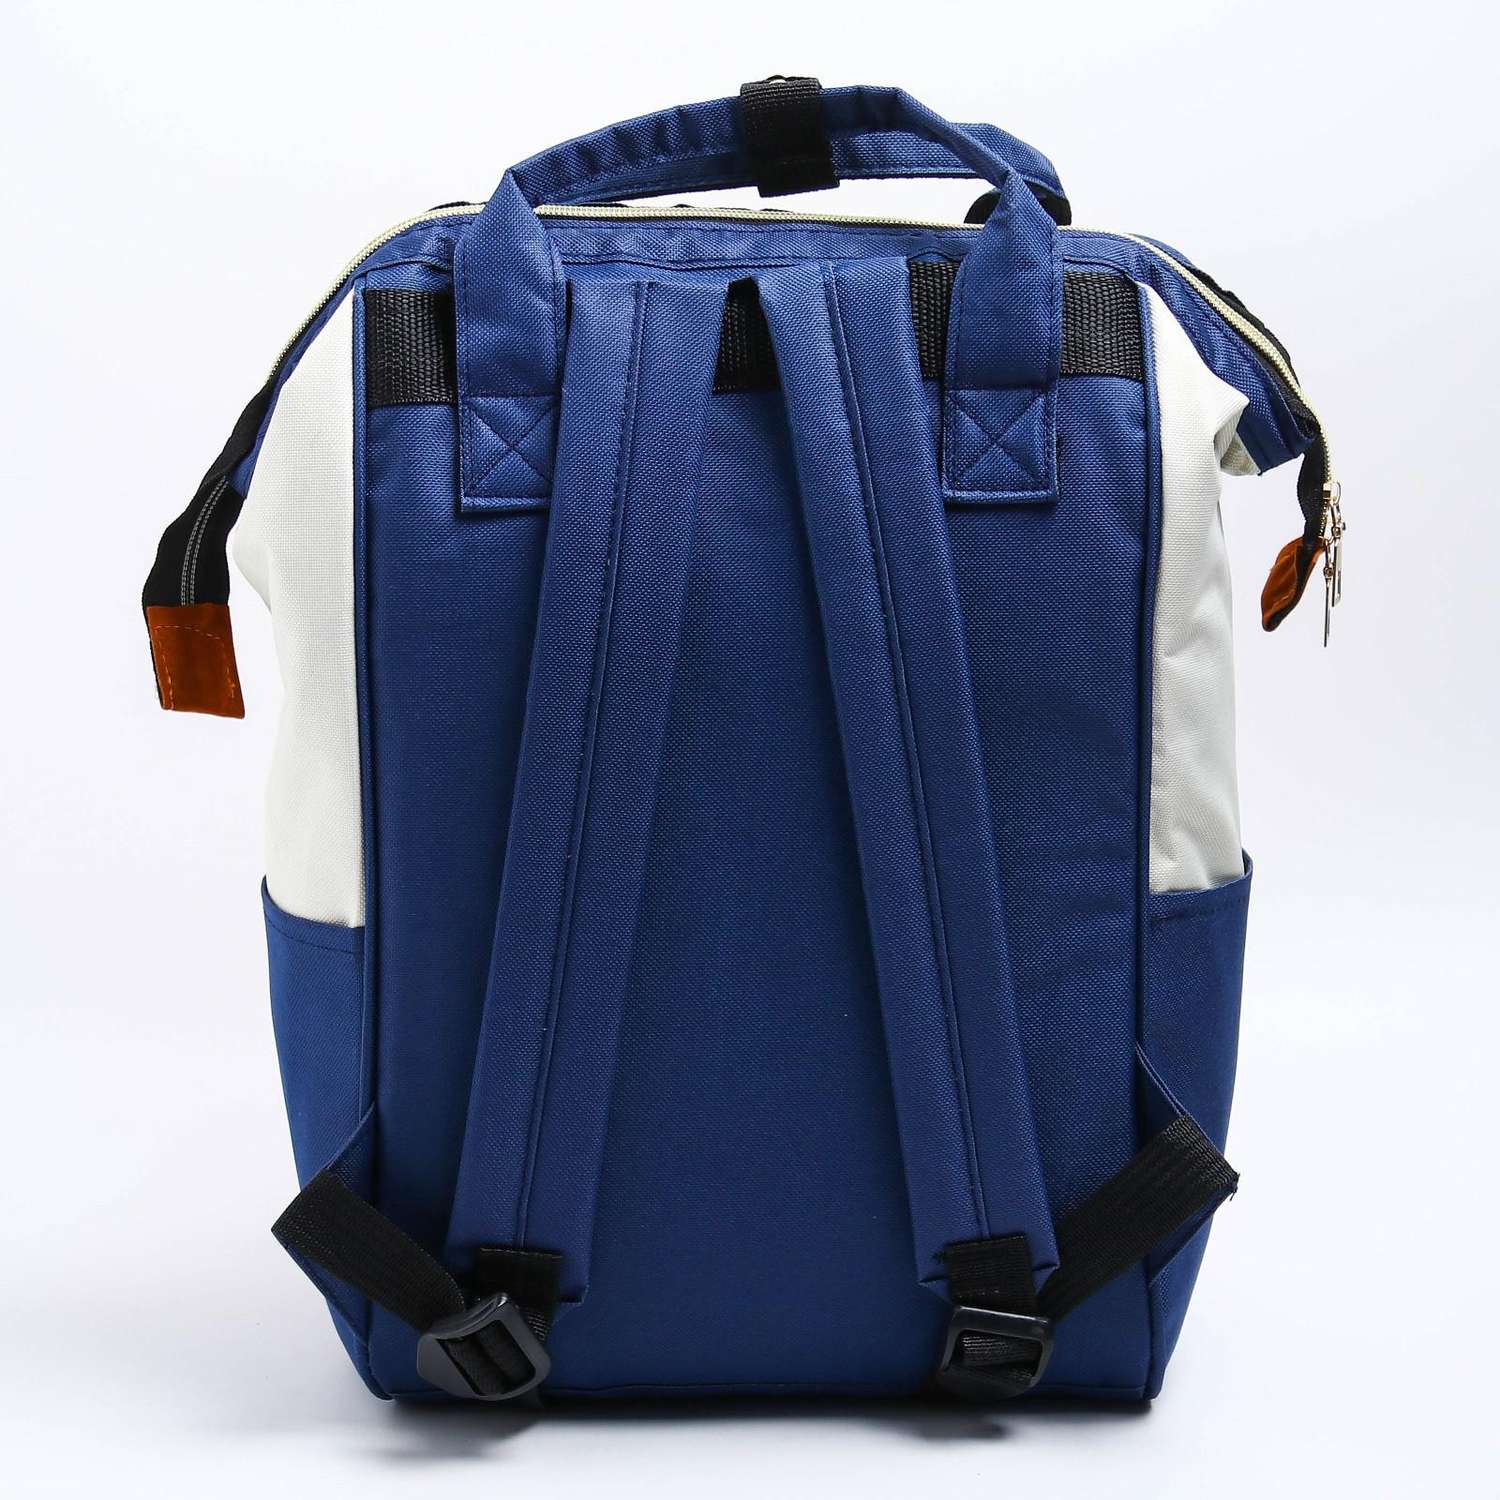 Сумка-рюкзак Sima-Land для хранения вещей малыша цвет красный - фото 5